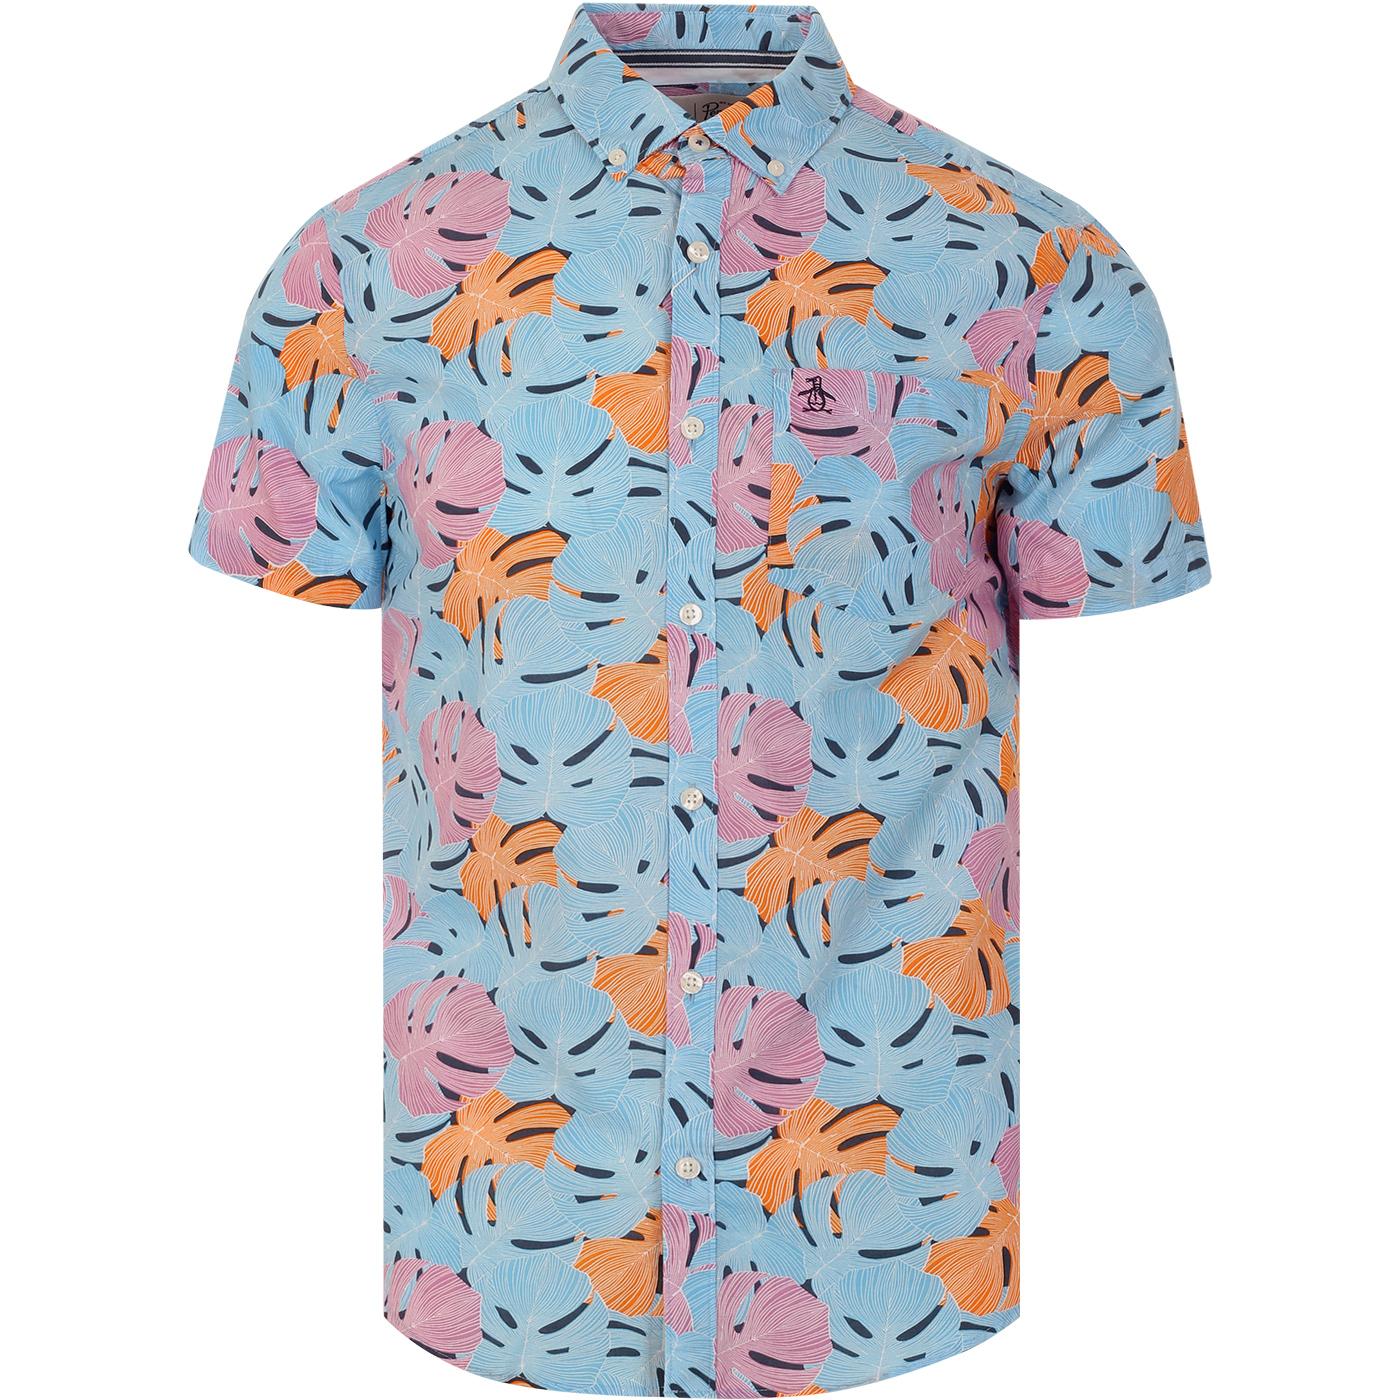 ORIGINAL PENGUIN Retro 80s Tropical Floral Shirt